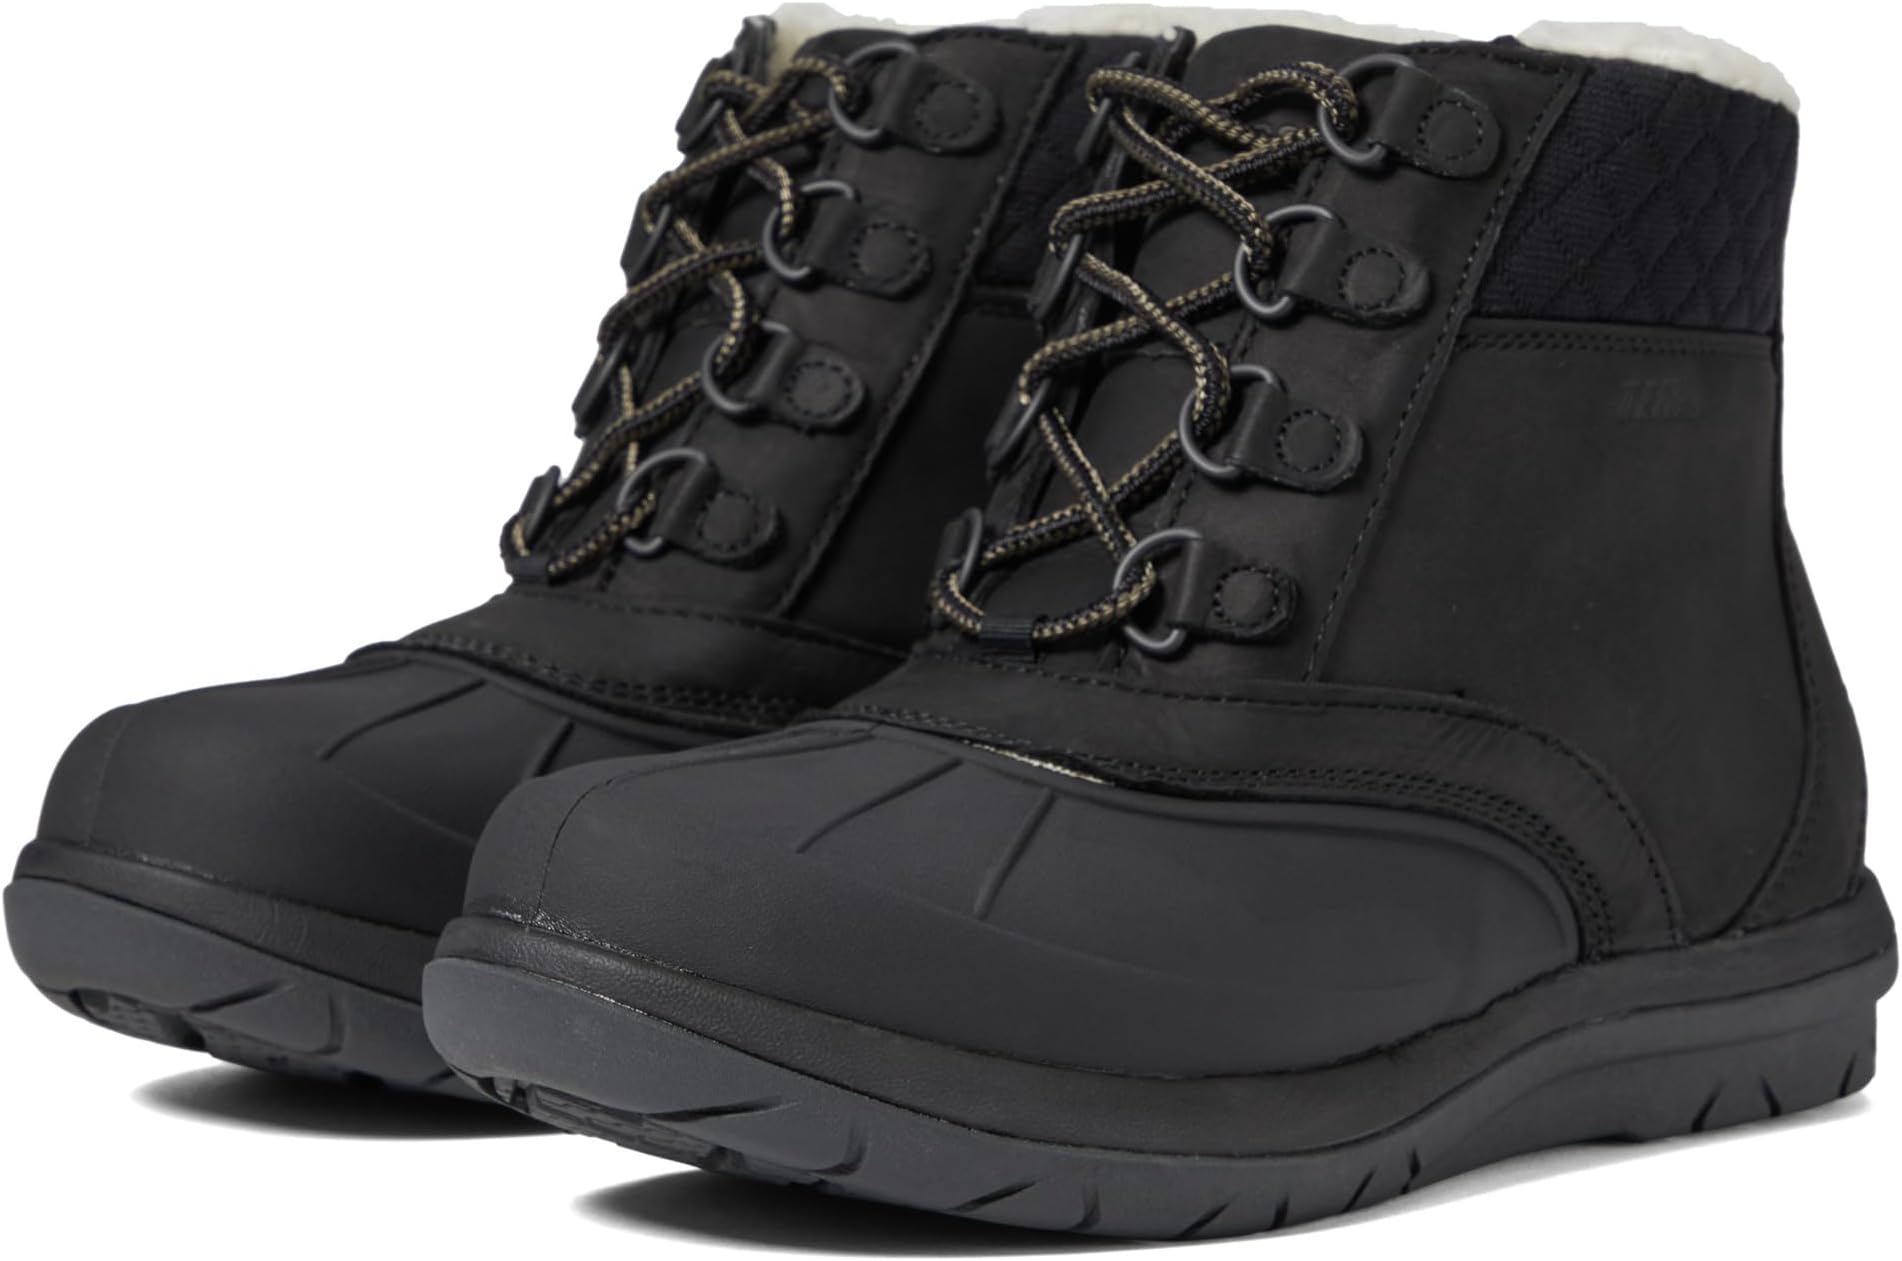 Зимние ботинки Storm Chaser Lace Boot 5 L.L.Bean, цвет Black/Black